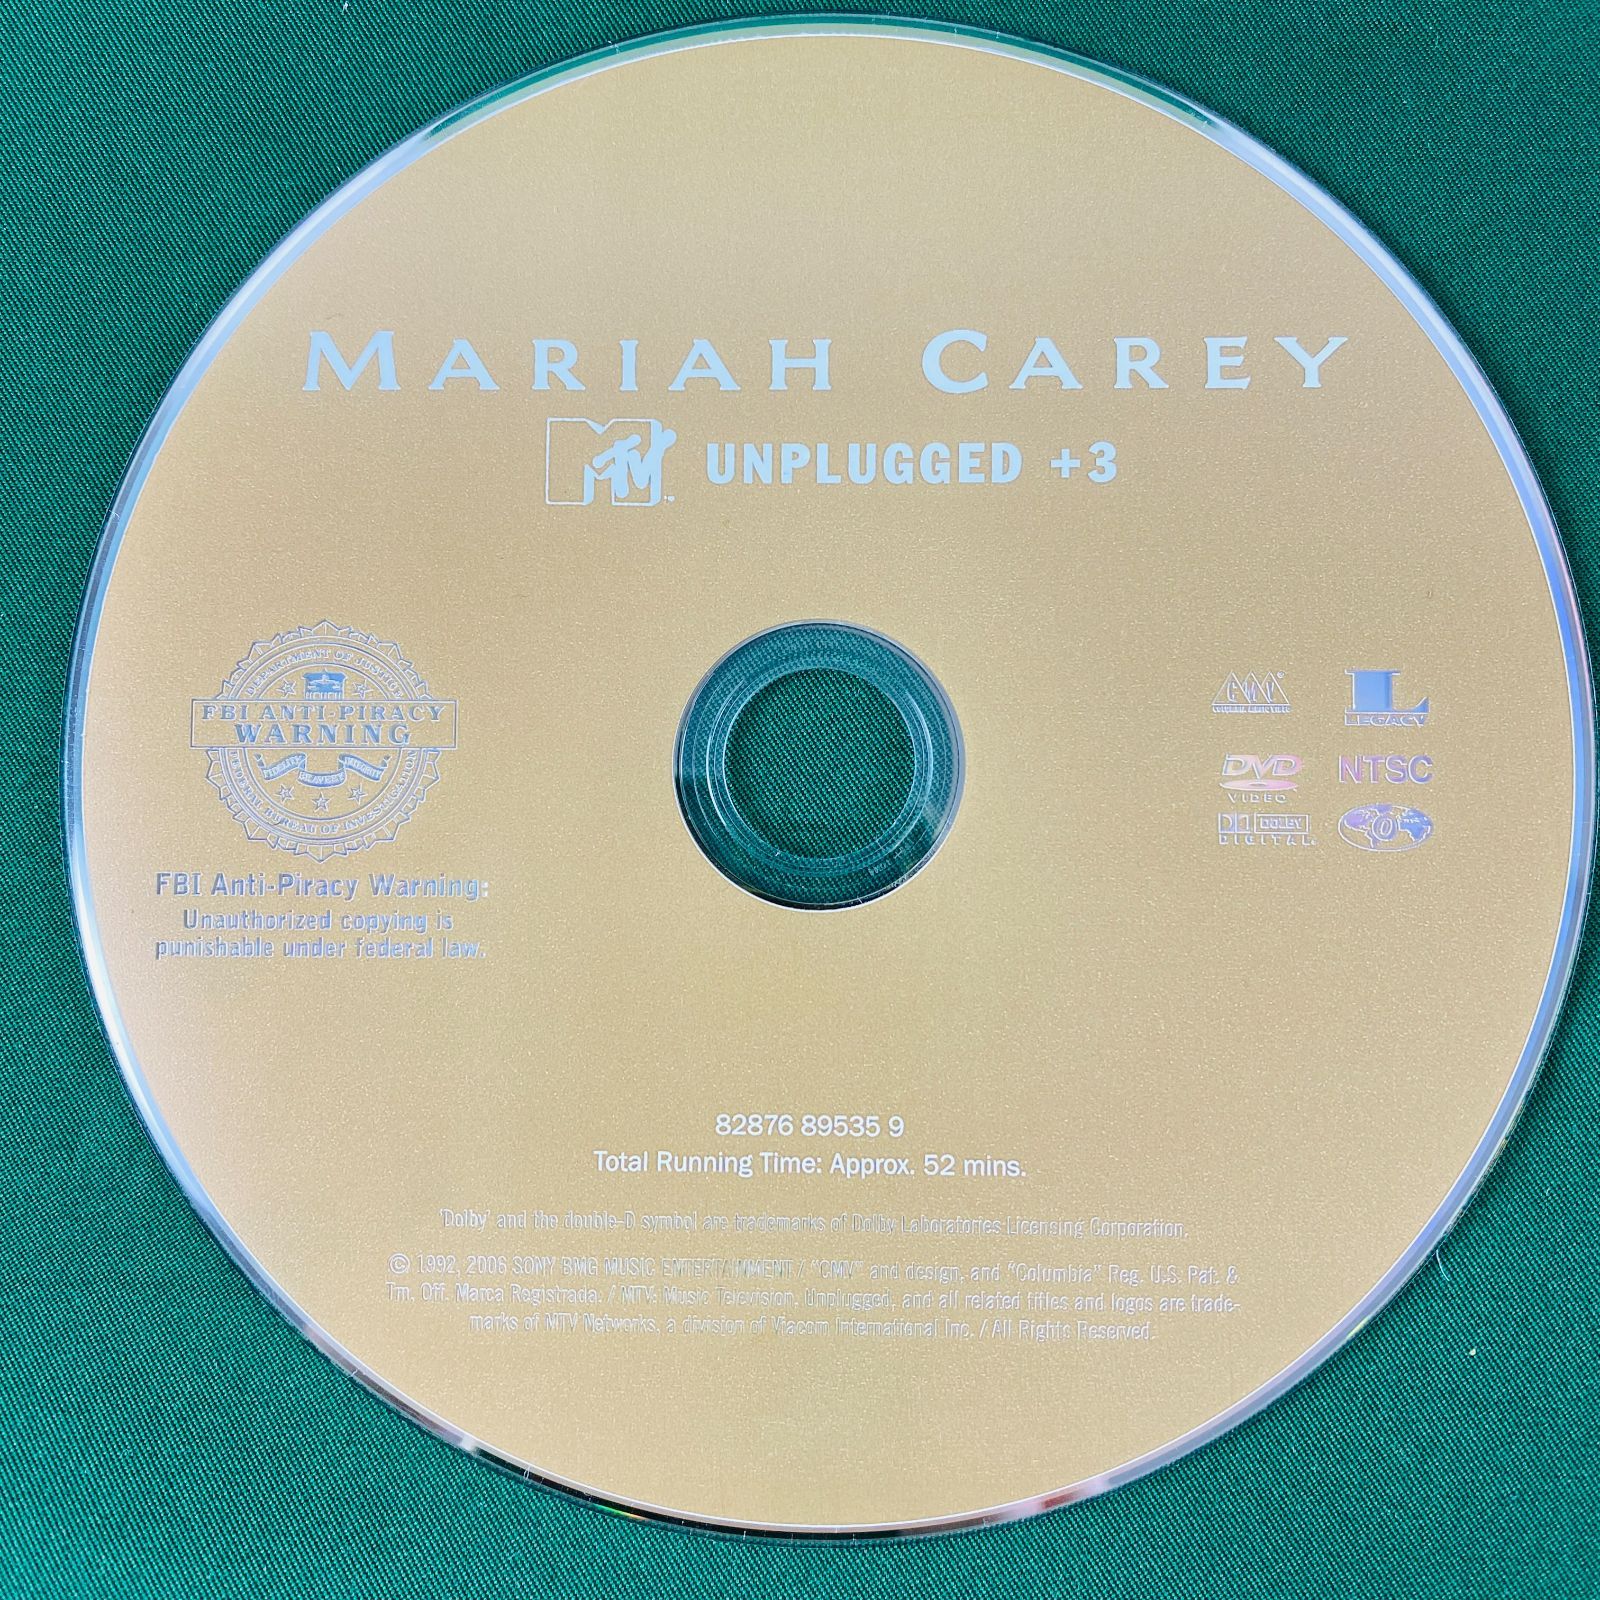 ◇マライア キャリー MTVアンプラグド+3 DVD MARAAH CAREY UNPLUGGEDEP 洋楽 ミュージック ライヴ  MTVのライヴ映像作品 ビデオクリップ